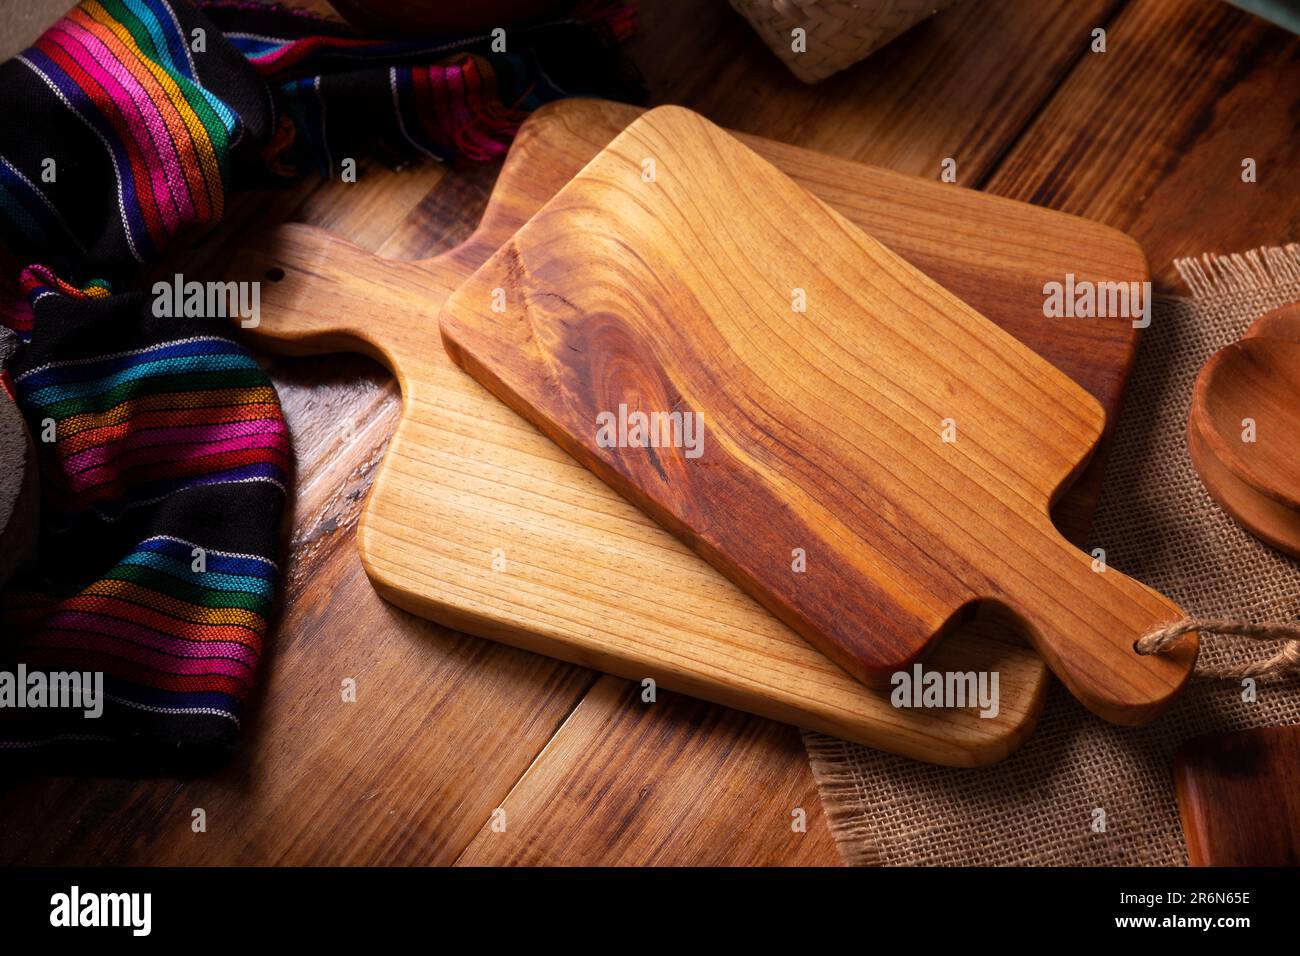 Vuoto rustico tagliere in legno per cucina su vecchio tavolo in legno. Foto Stock